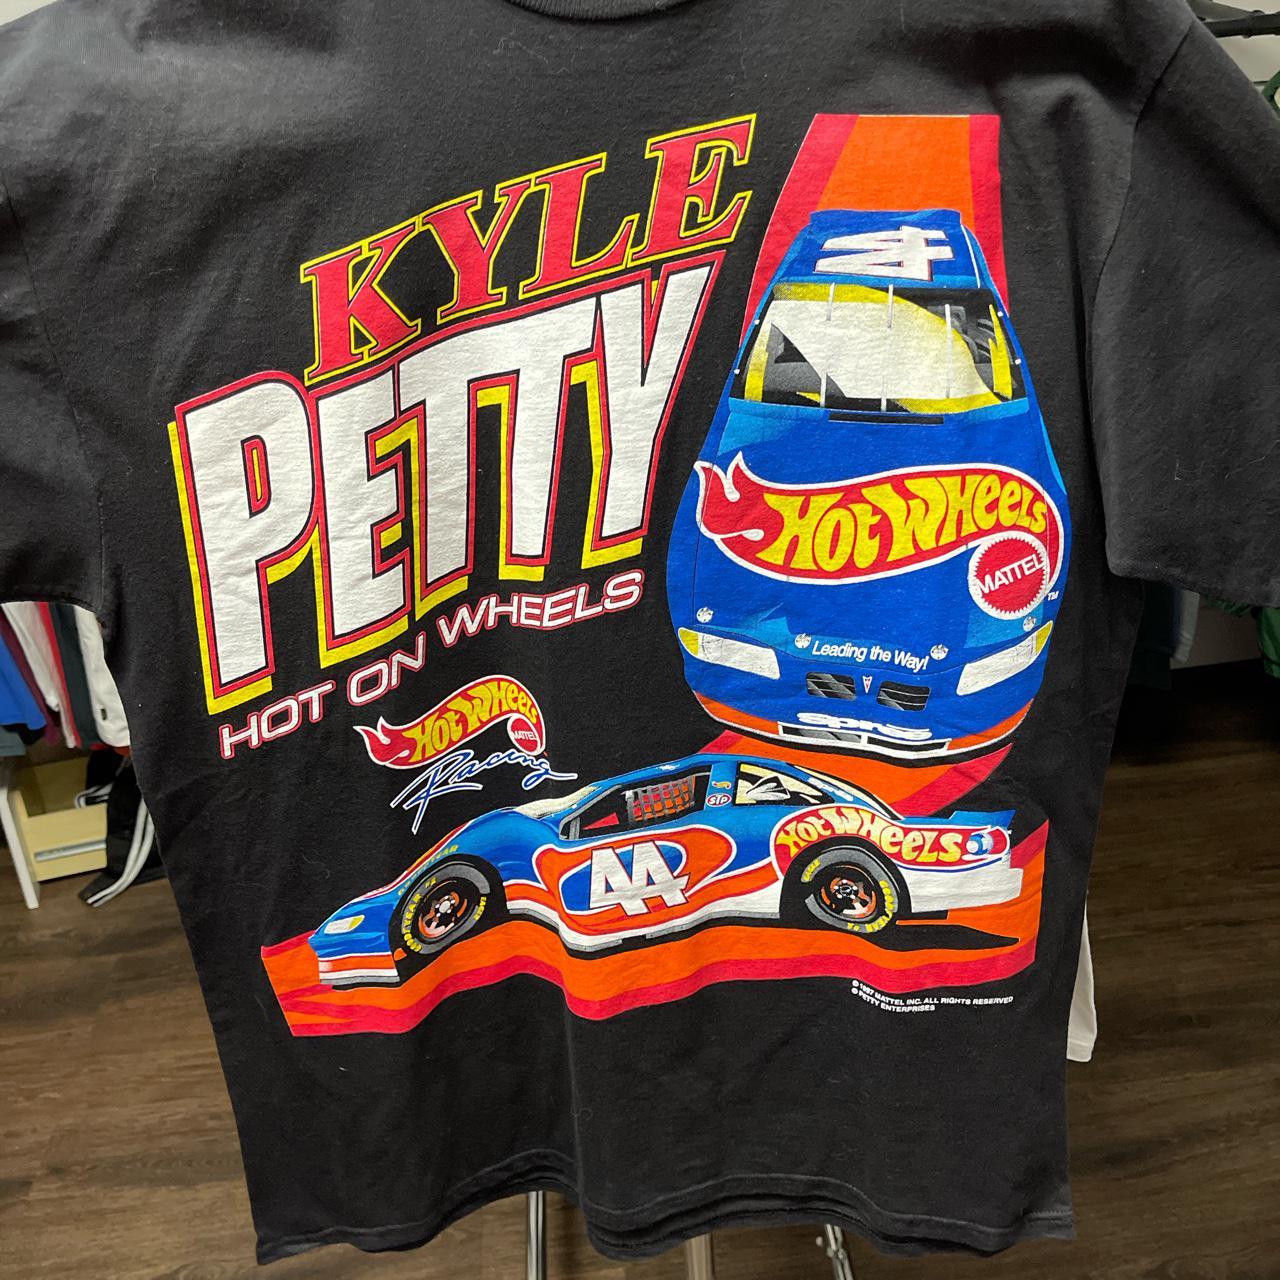 Vintage 1997 Kyle petty hot wheels nascar all over print t-shirt Kleding Gender-neutrale kleding volwassenen Tops & T-shirts T-shirts T-shirts met print 